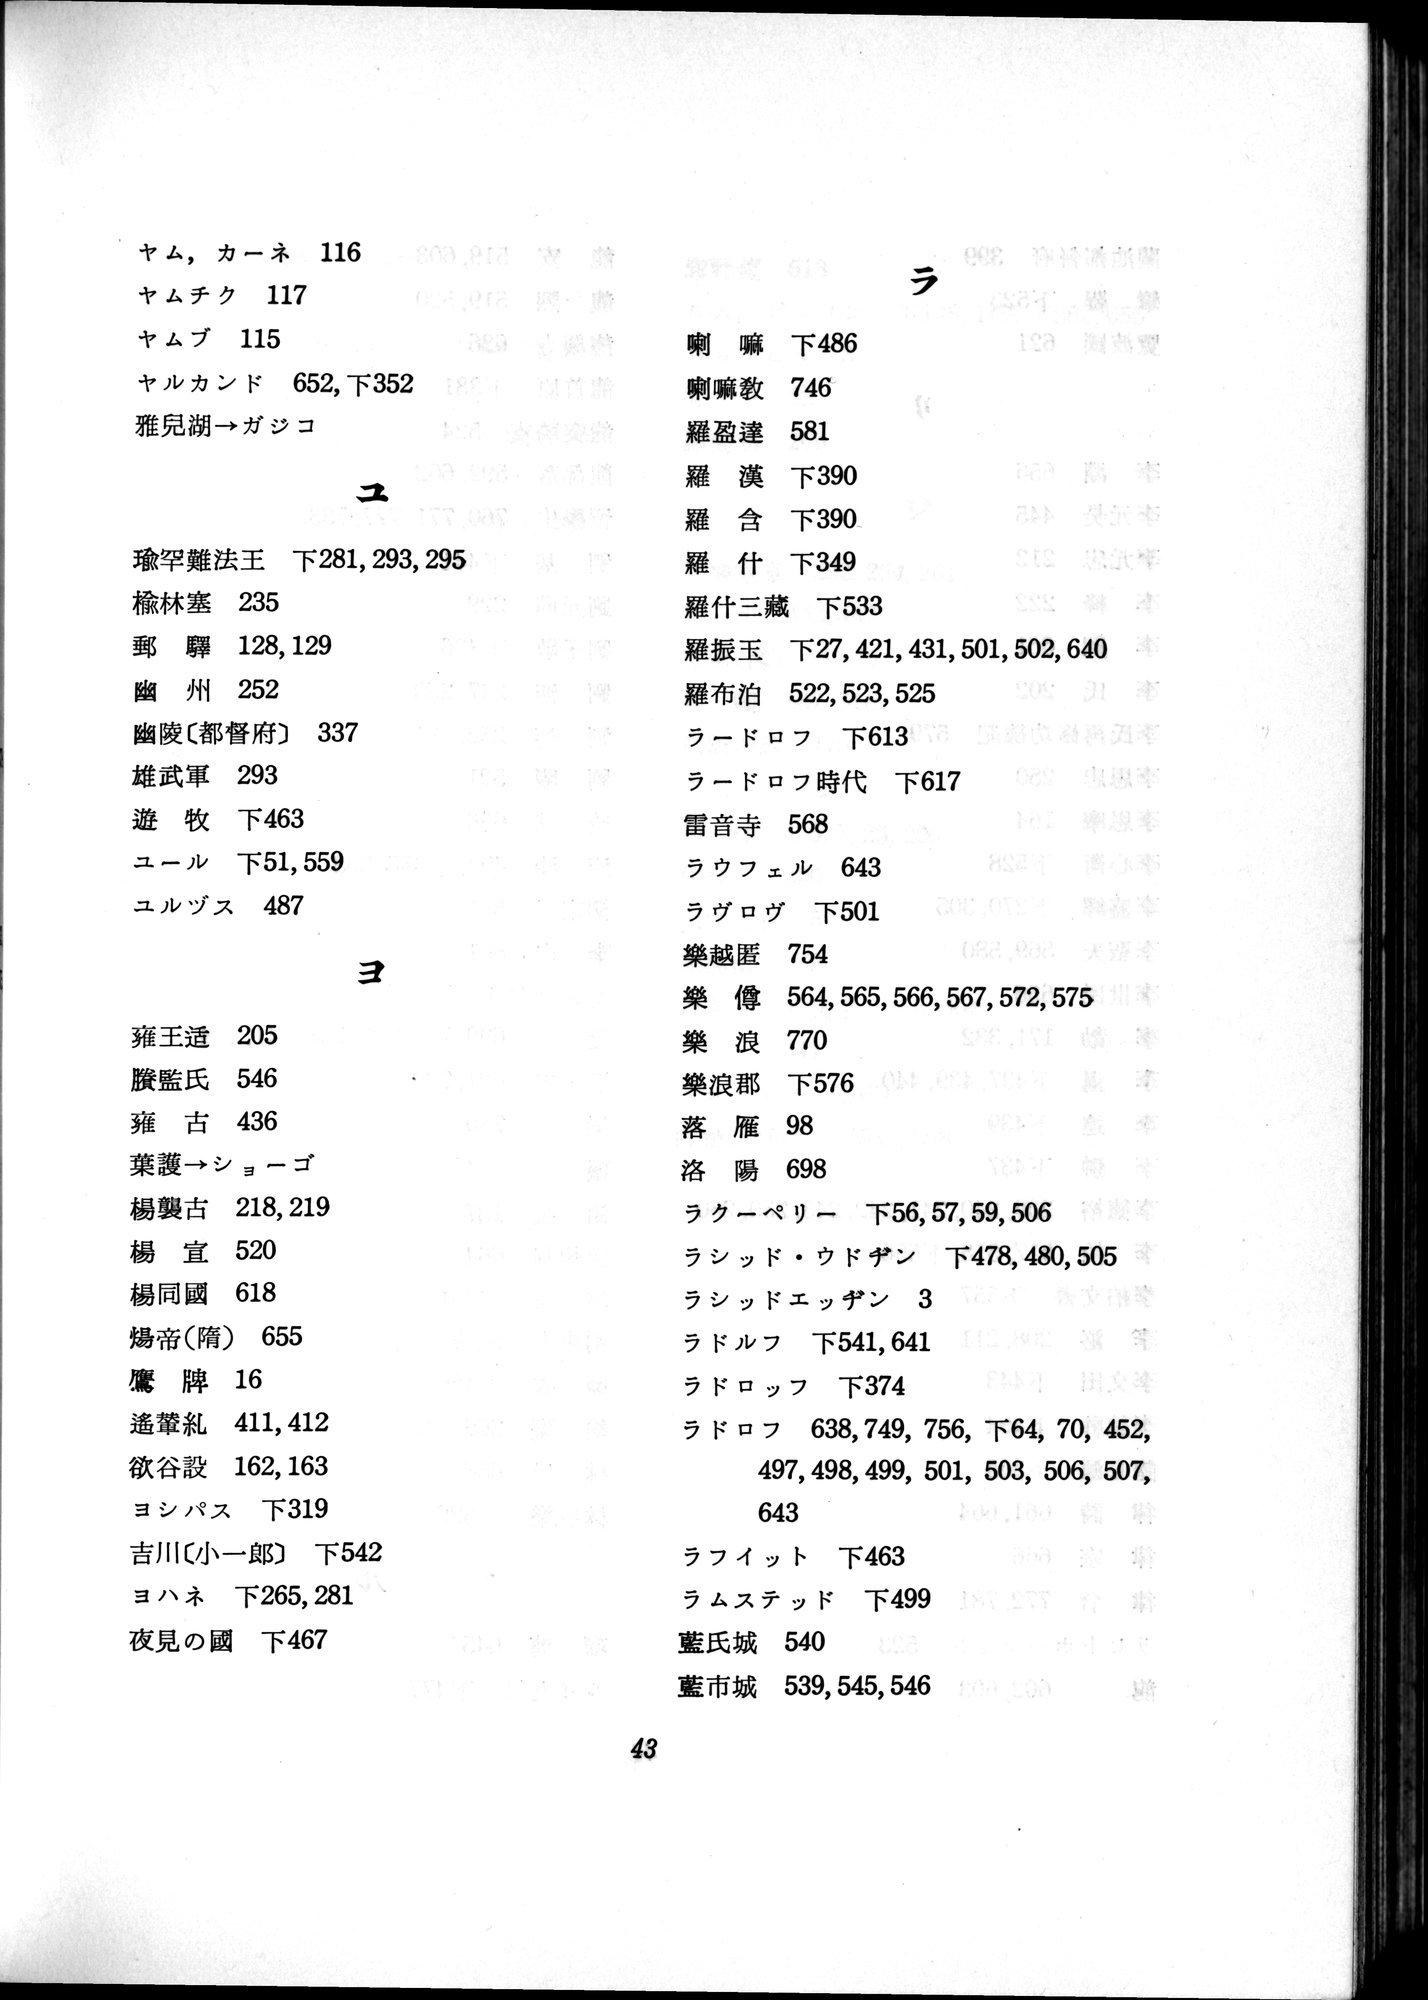 羽田博士史学論文集 : vol.2 / 764 ページ（白黒高解像度画像）